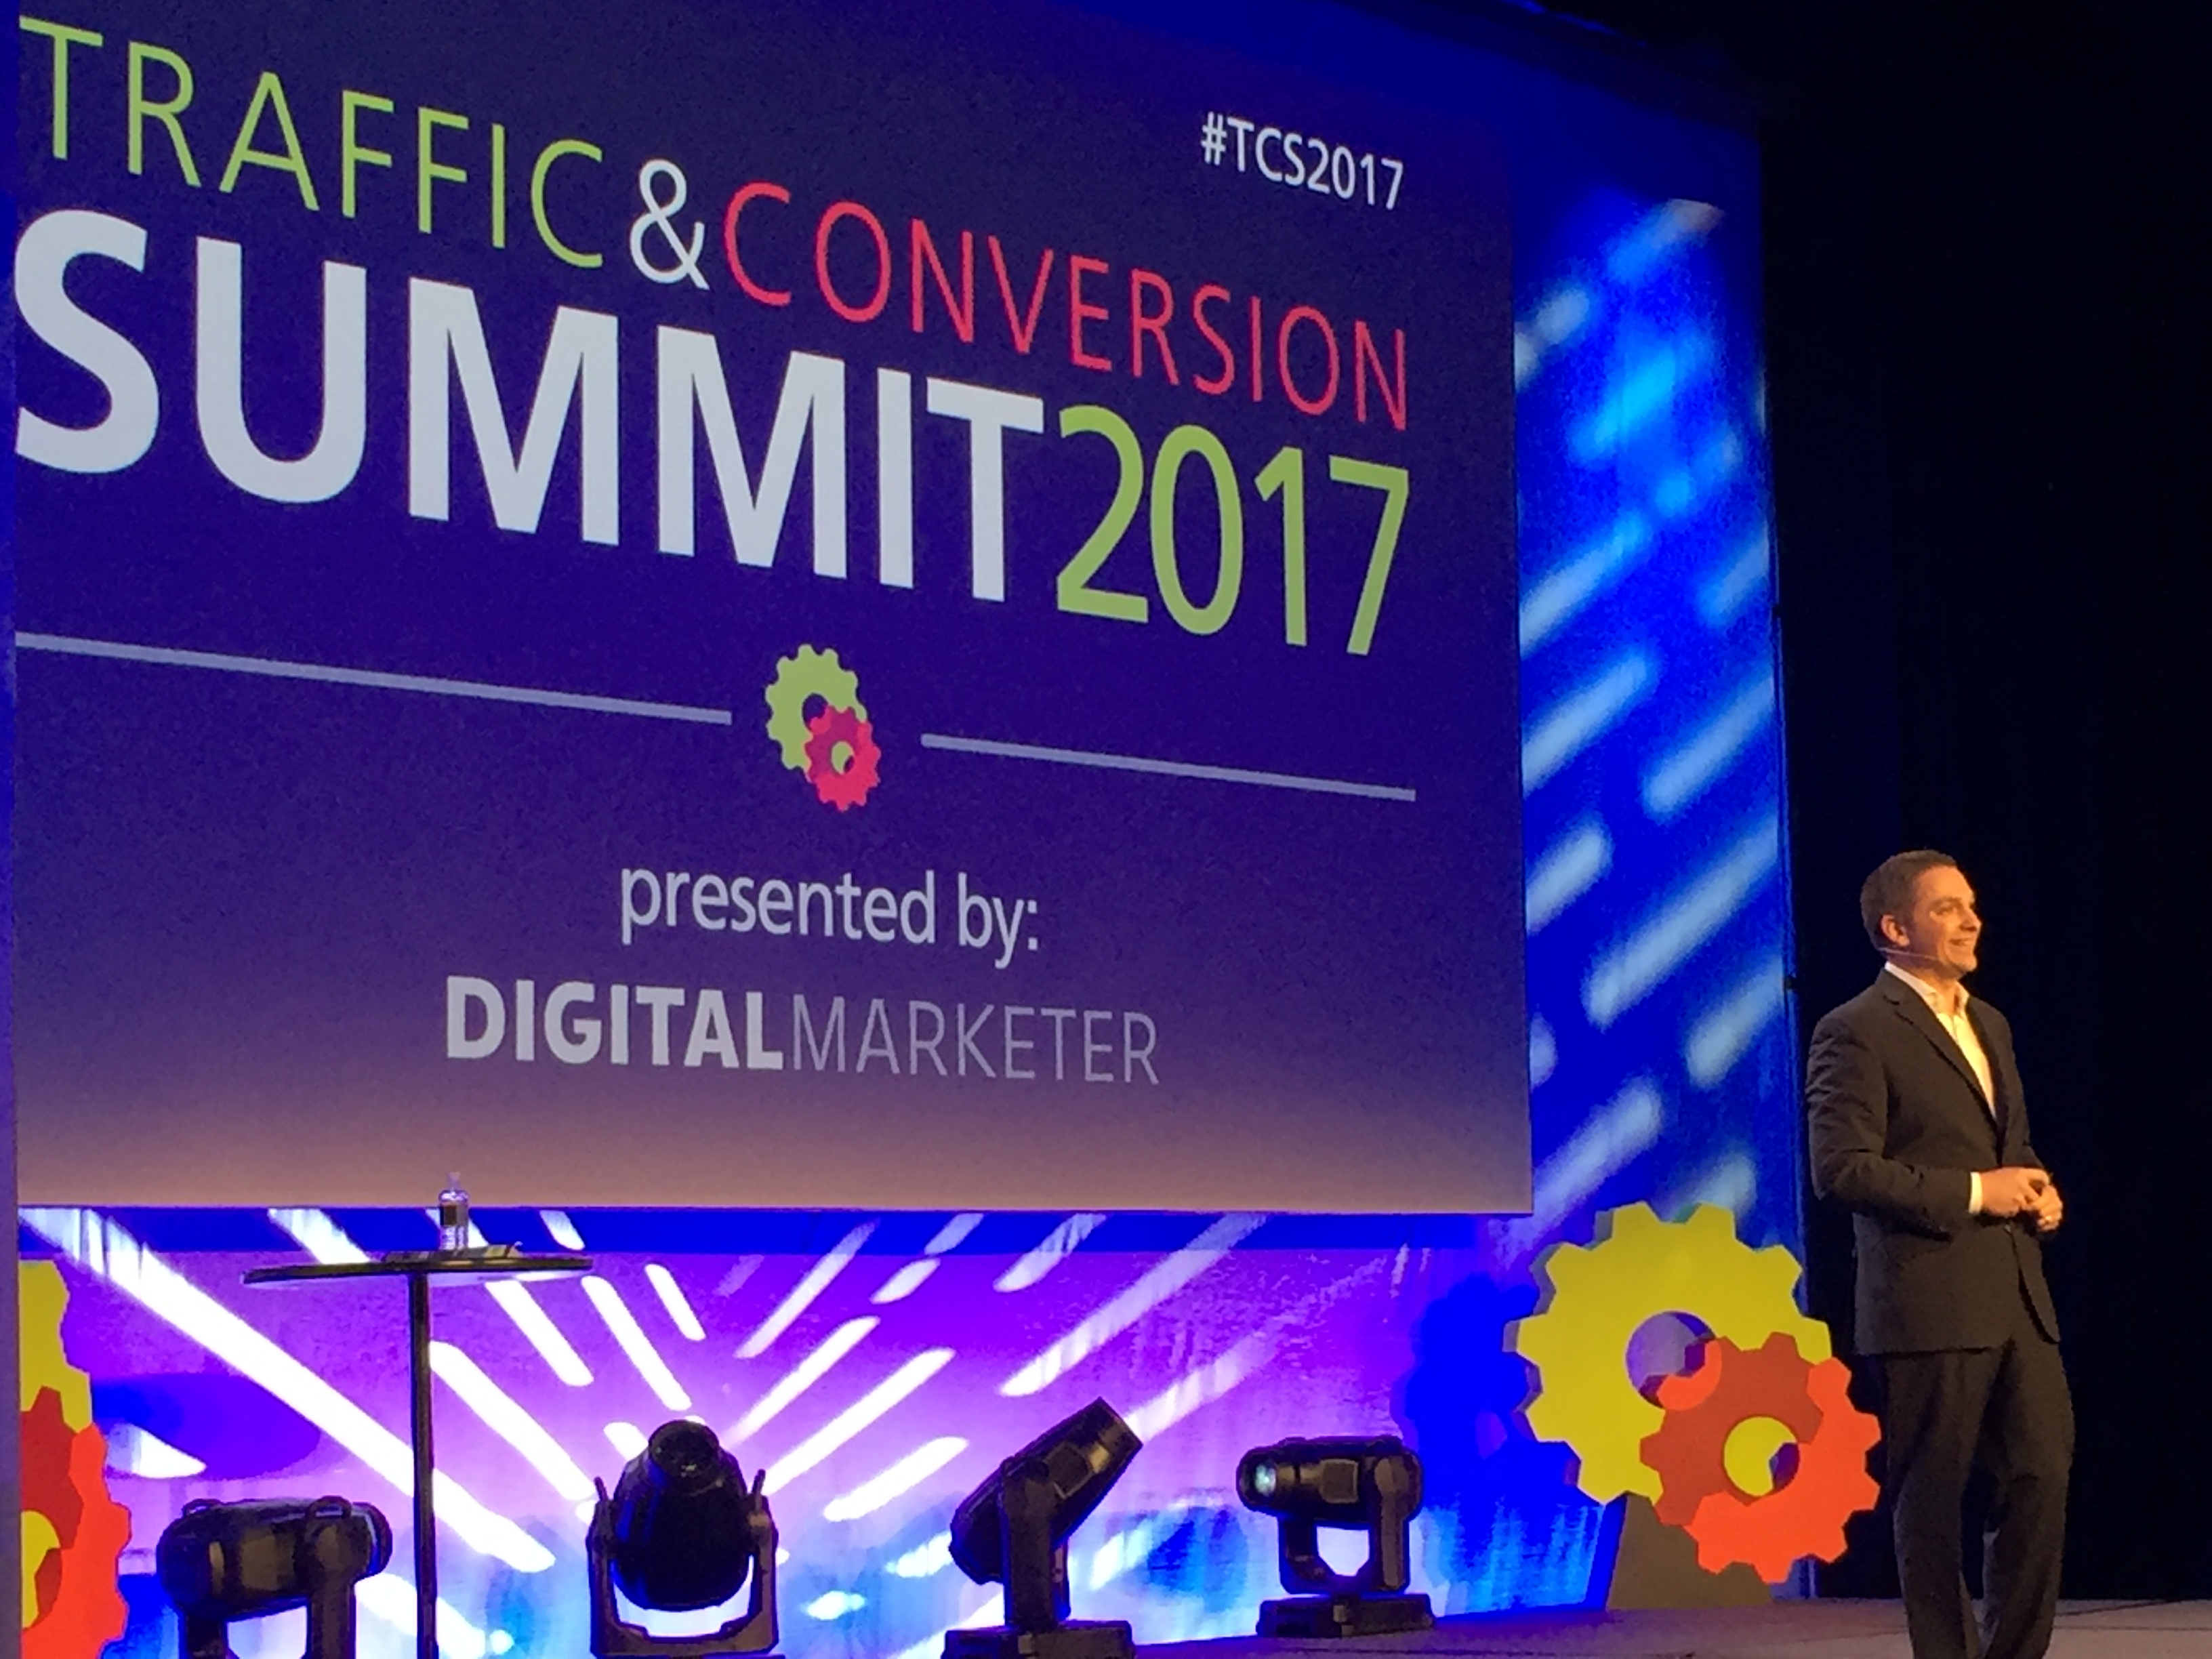 De online marketing trends van 2017 volgens Traffic & Conversion Summit 2017